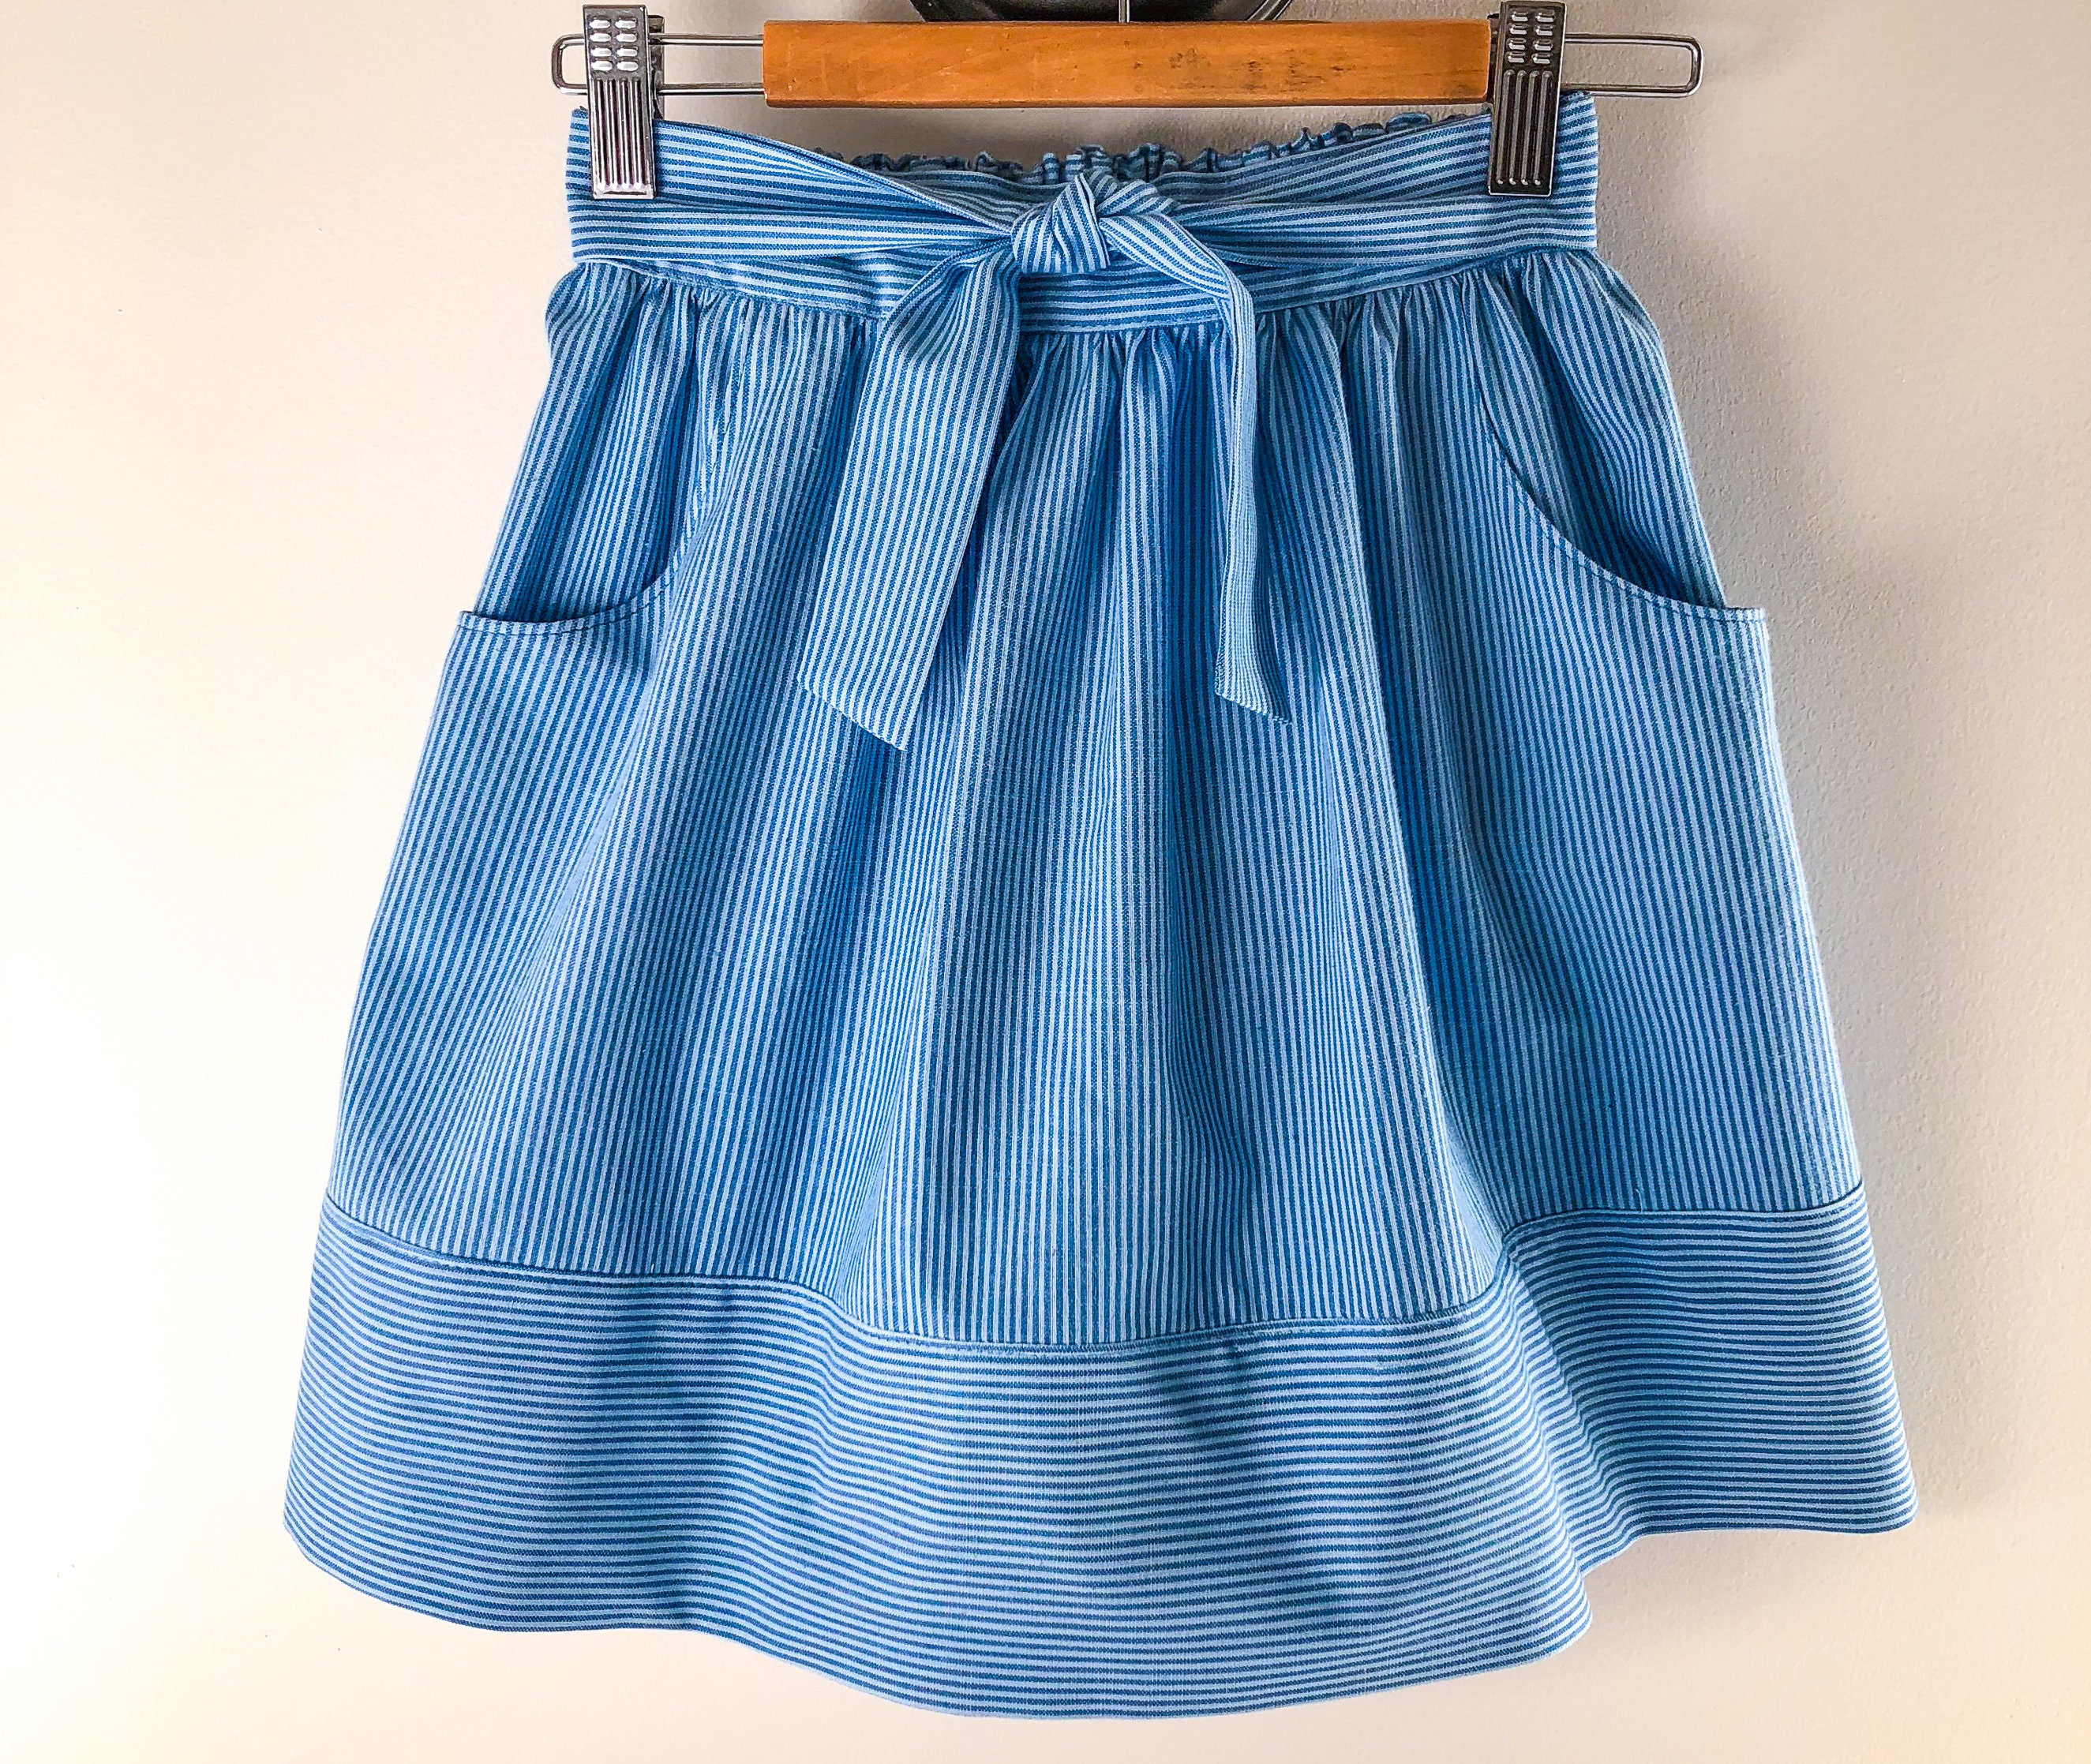 Sienna Gathered Skirt PDF Pattern in Sizes 1 2 3 4 6 8 | Etsy